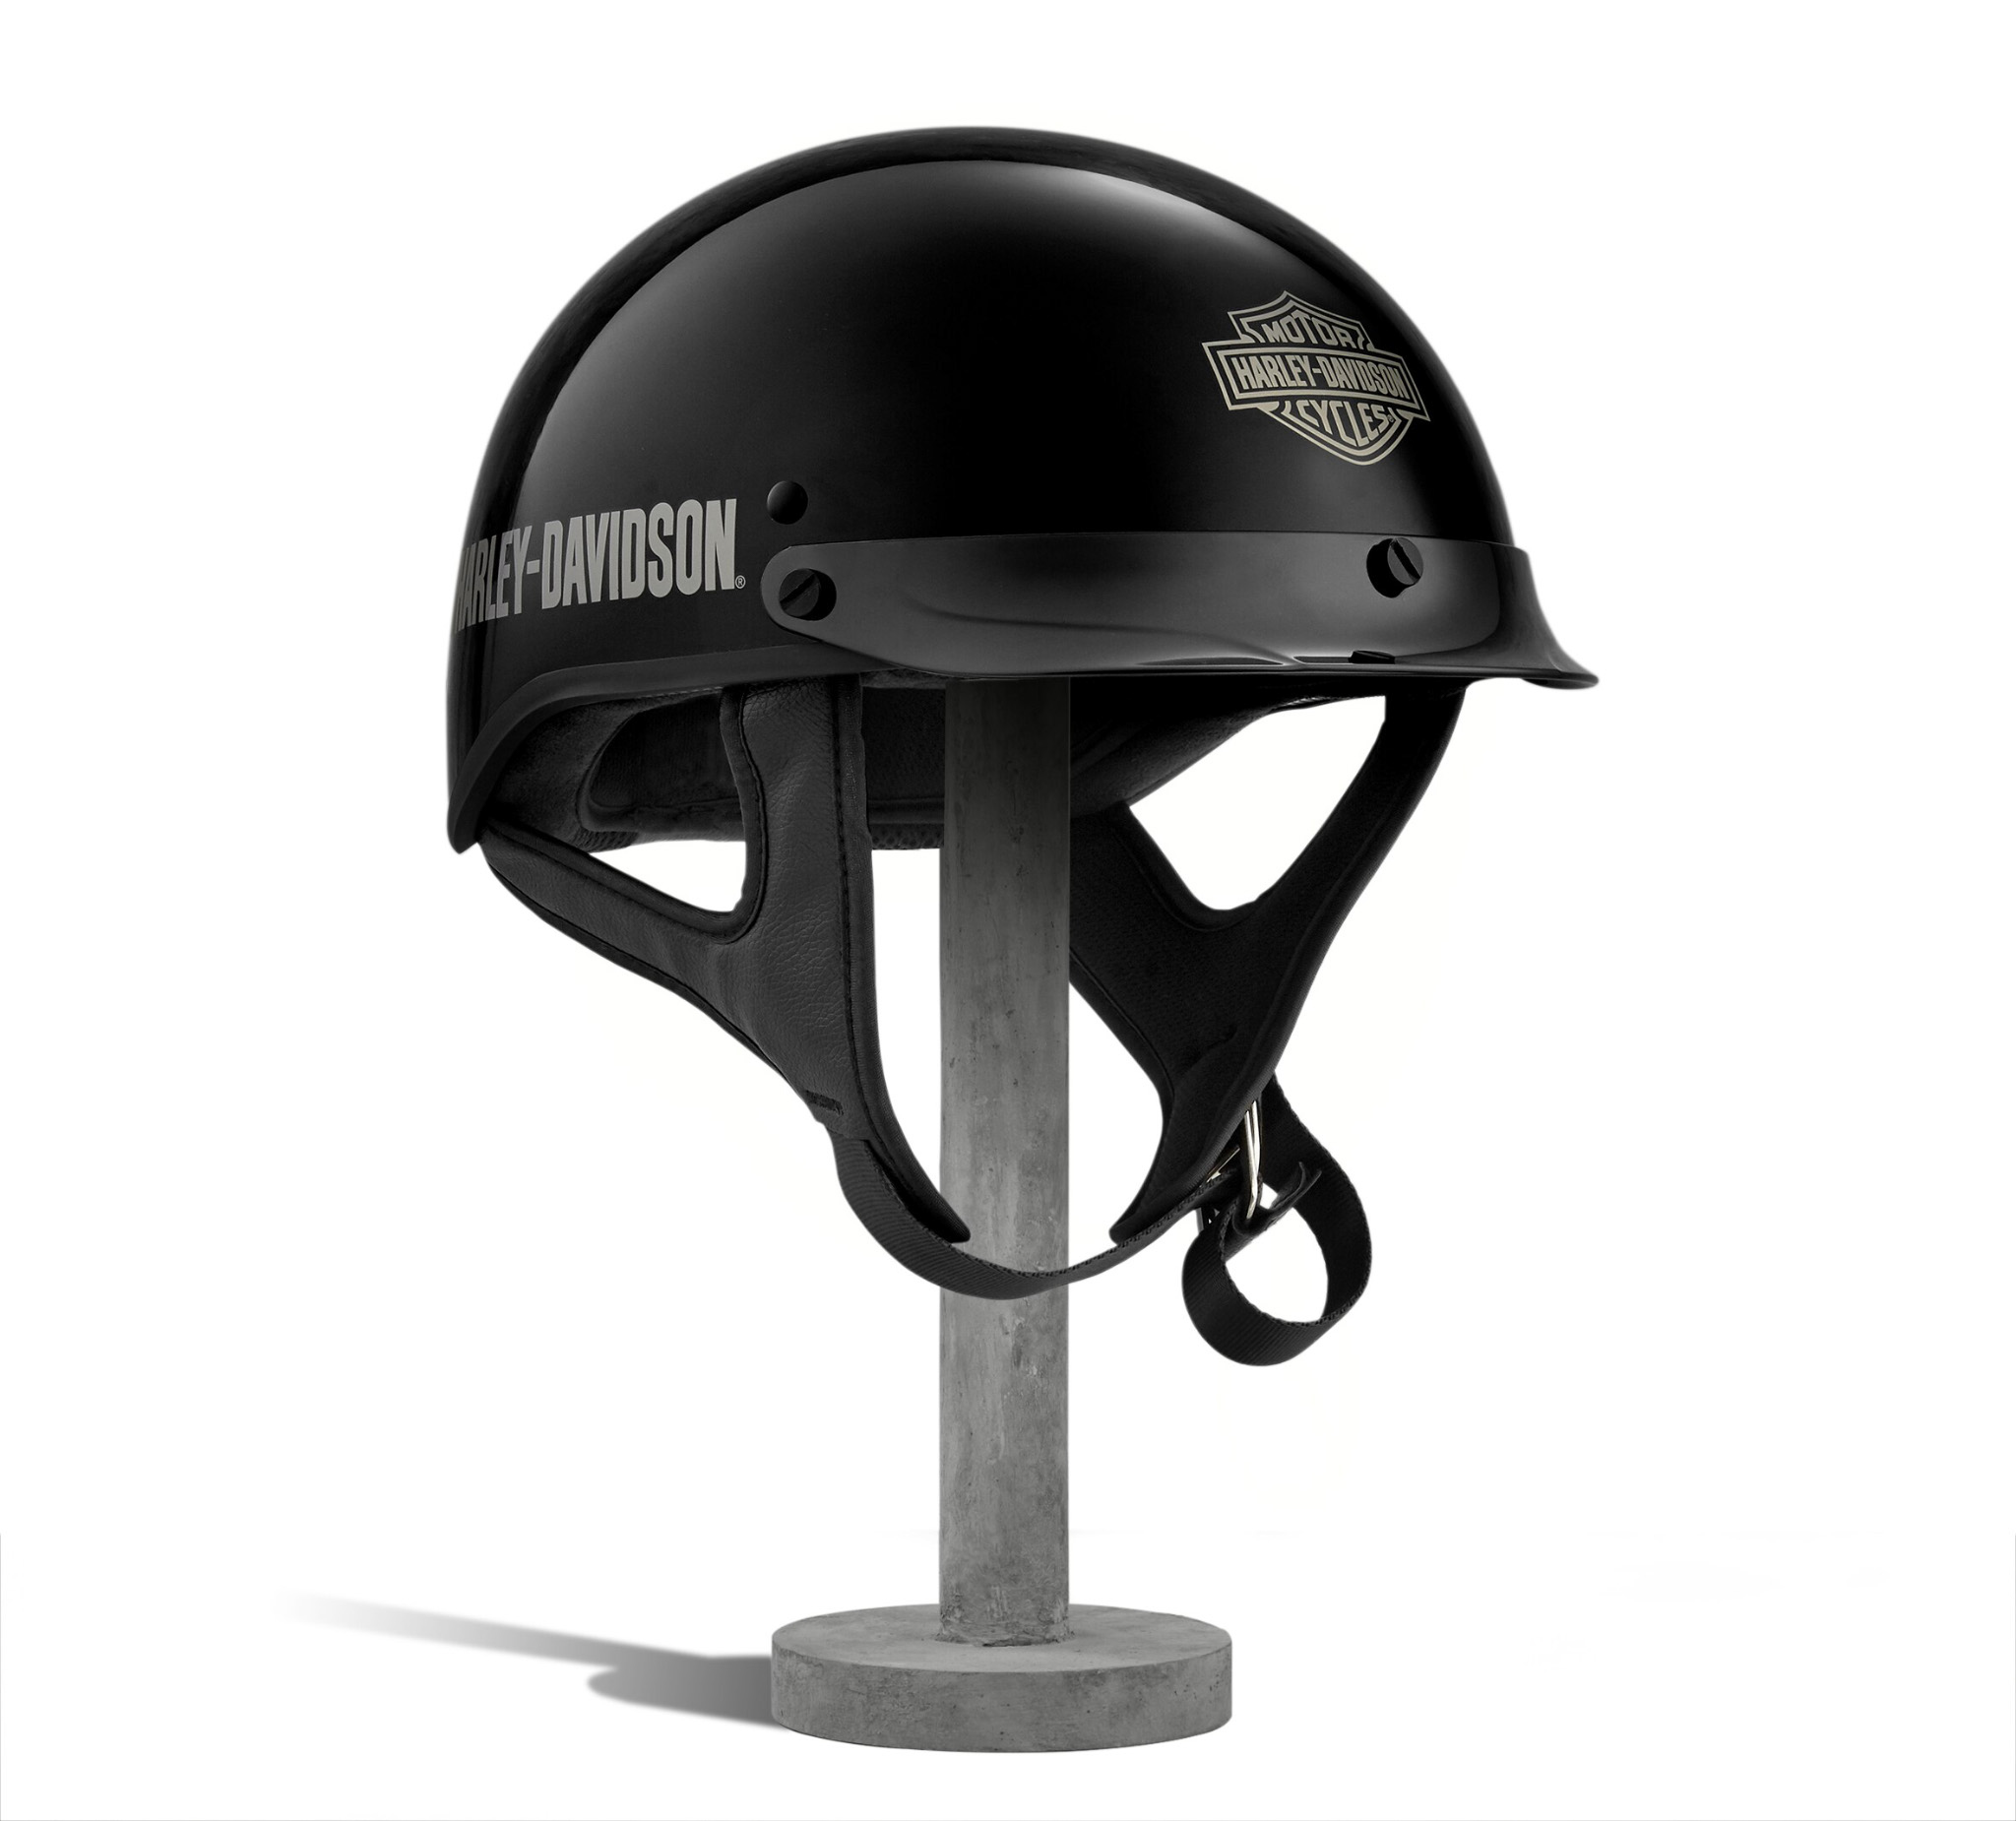 Harley Davidson Helmets For Women Promotion Off68